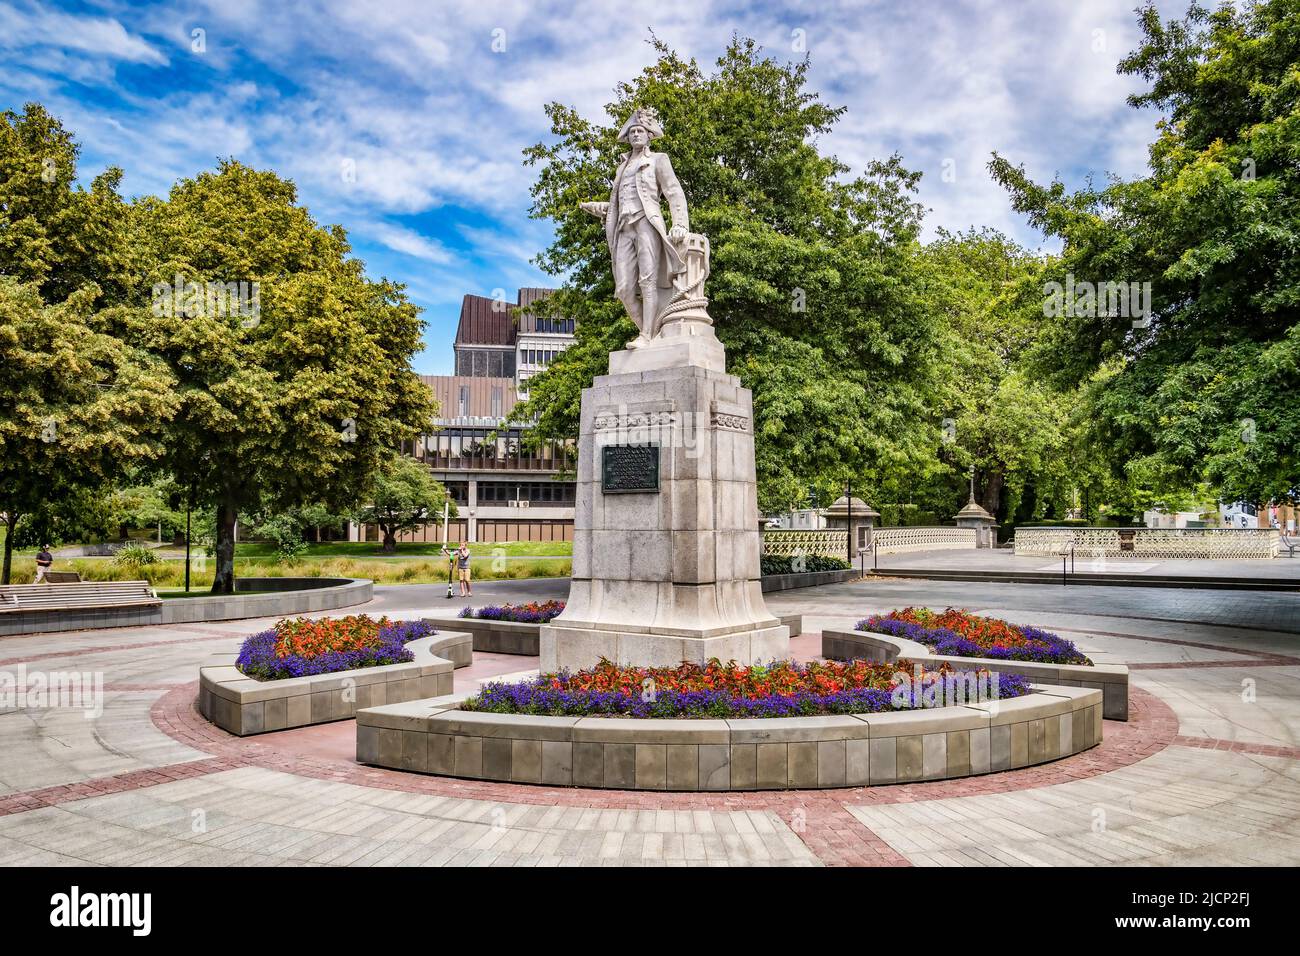 3 gennaio 2019: Christchurch, Nuova Zelanda - Victoria Square in estate, con alberi in foglia piena, e la statua del Capitano James Cook. Foto Stock